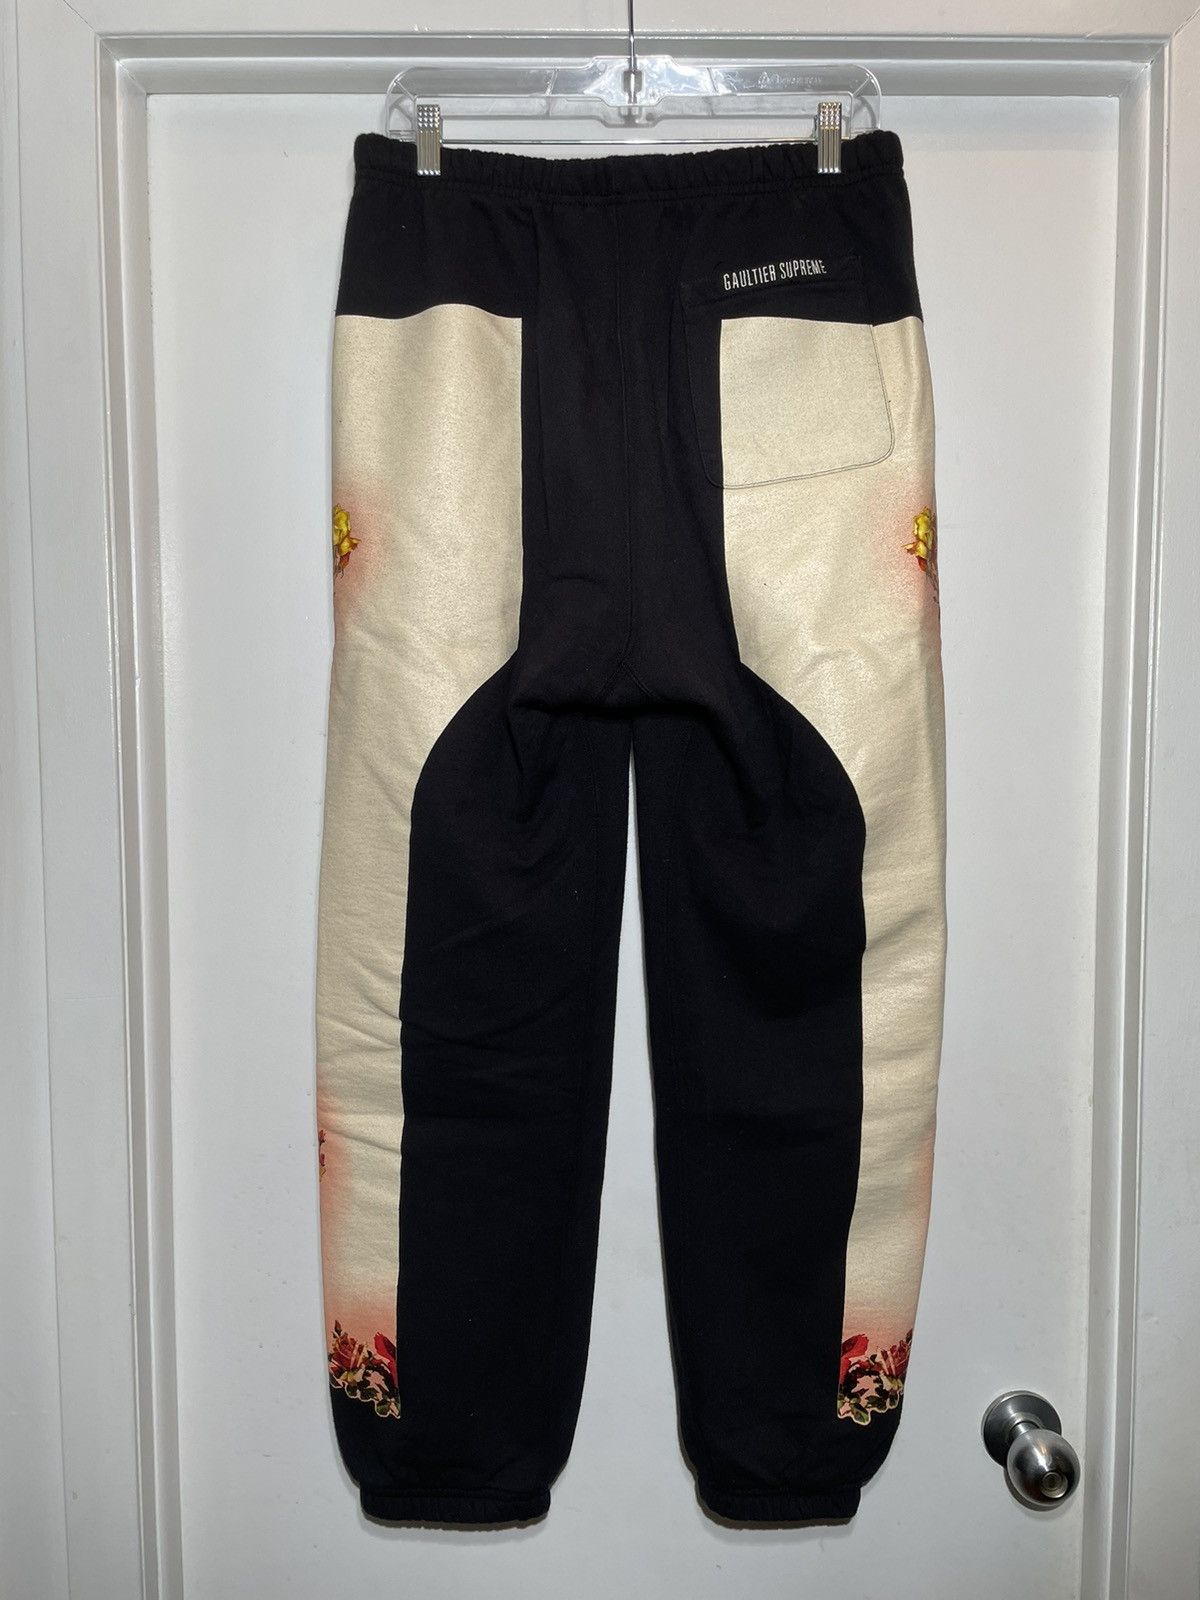 Supreme Supreme Jean Paul Gaultier Floral Sweatpants SS ‘19 Size US 32 / EU 48 - 5 Thumbnail